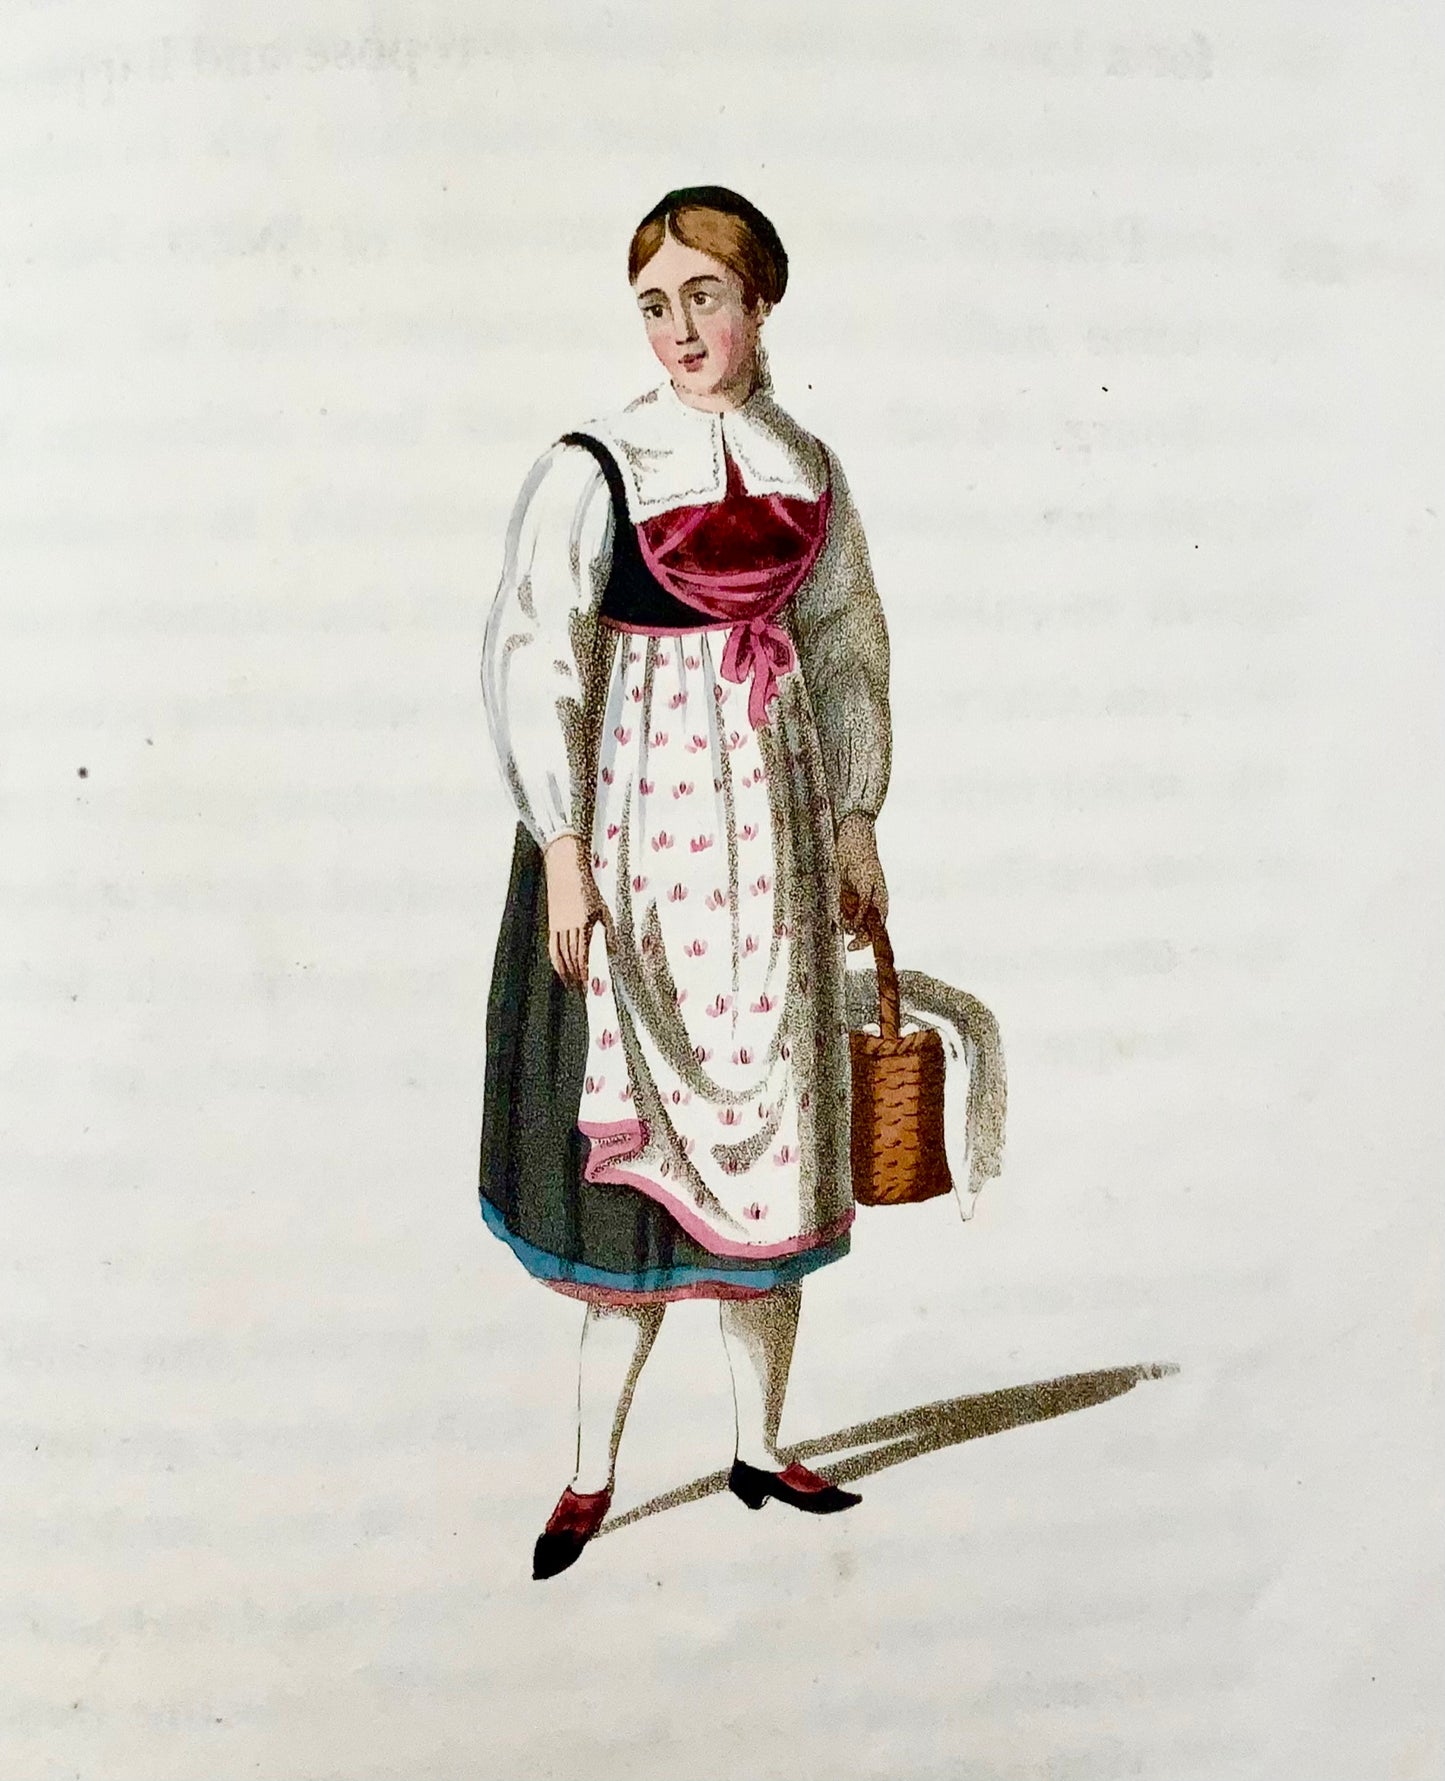 1815 Anne YOSY - Costumi e mestieri della Svizzera 2 voll. 50 col. Per favore. Libro